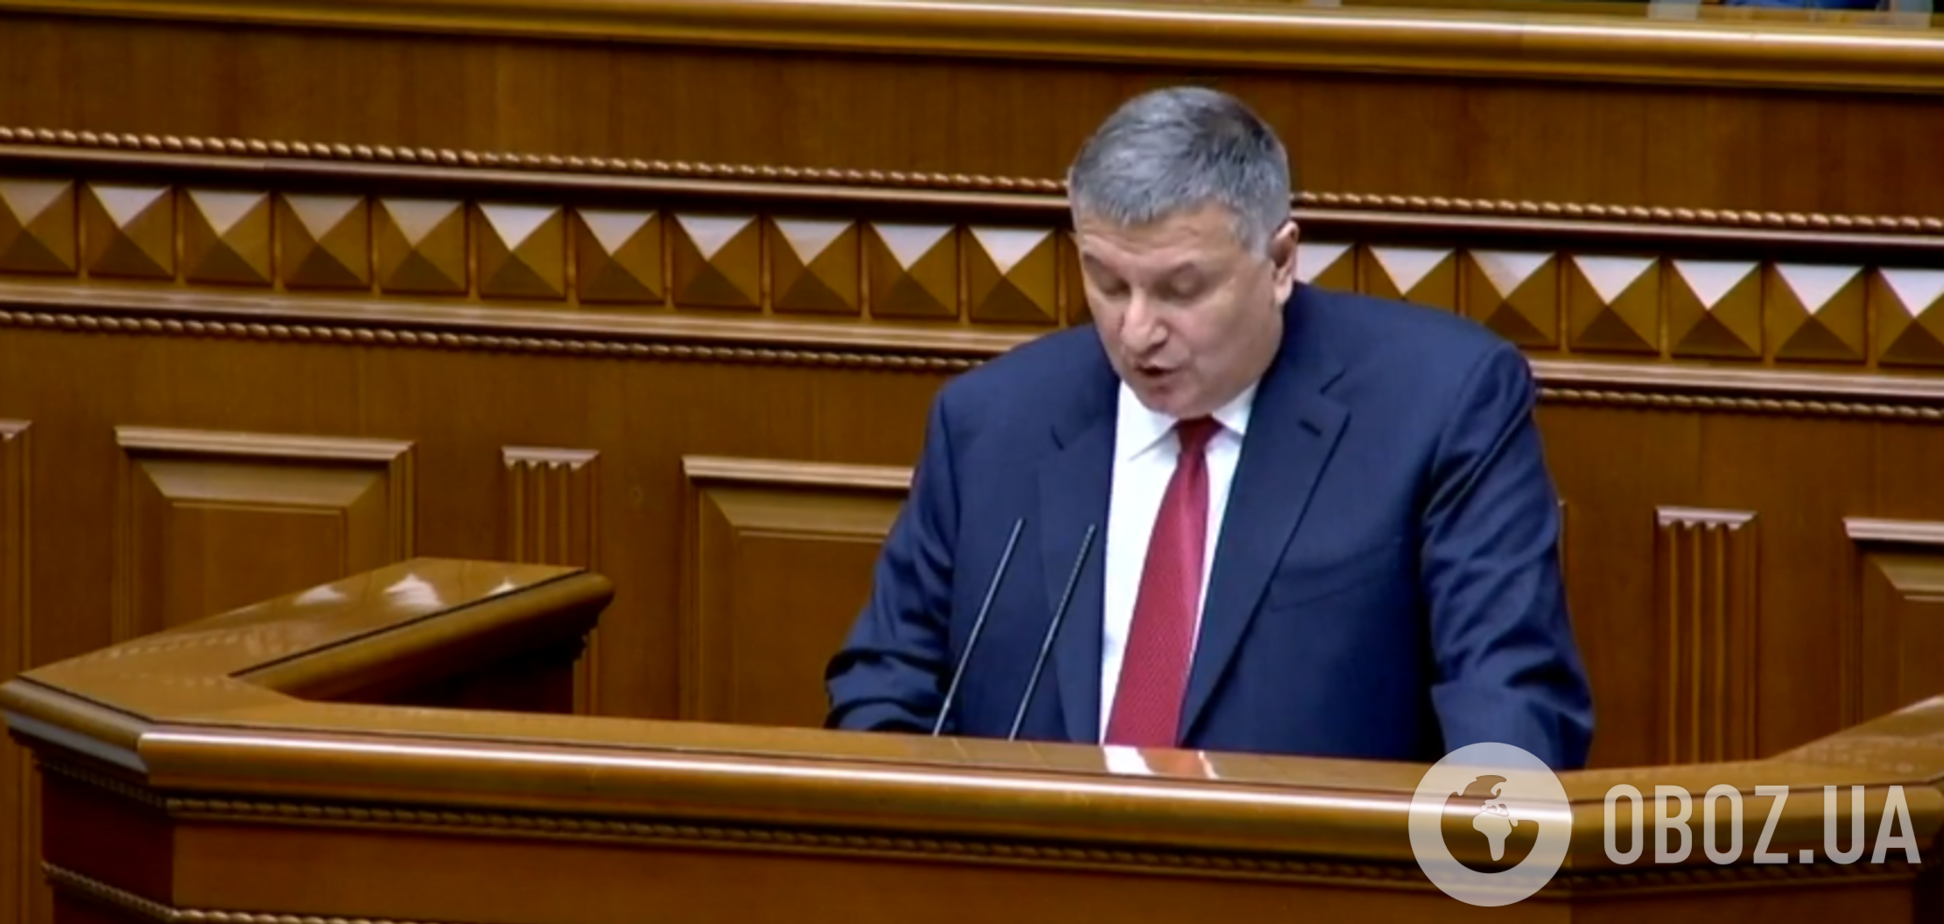 Аваков мощно выступил в парламенте и отчитался о нашумевших ЧП